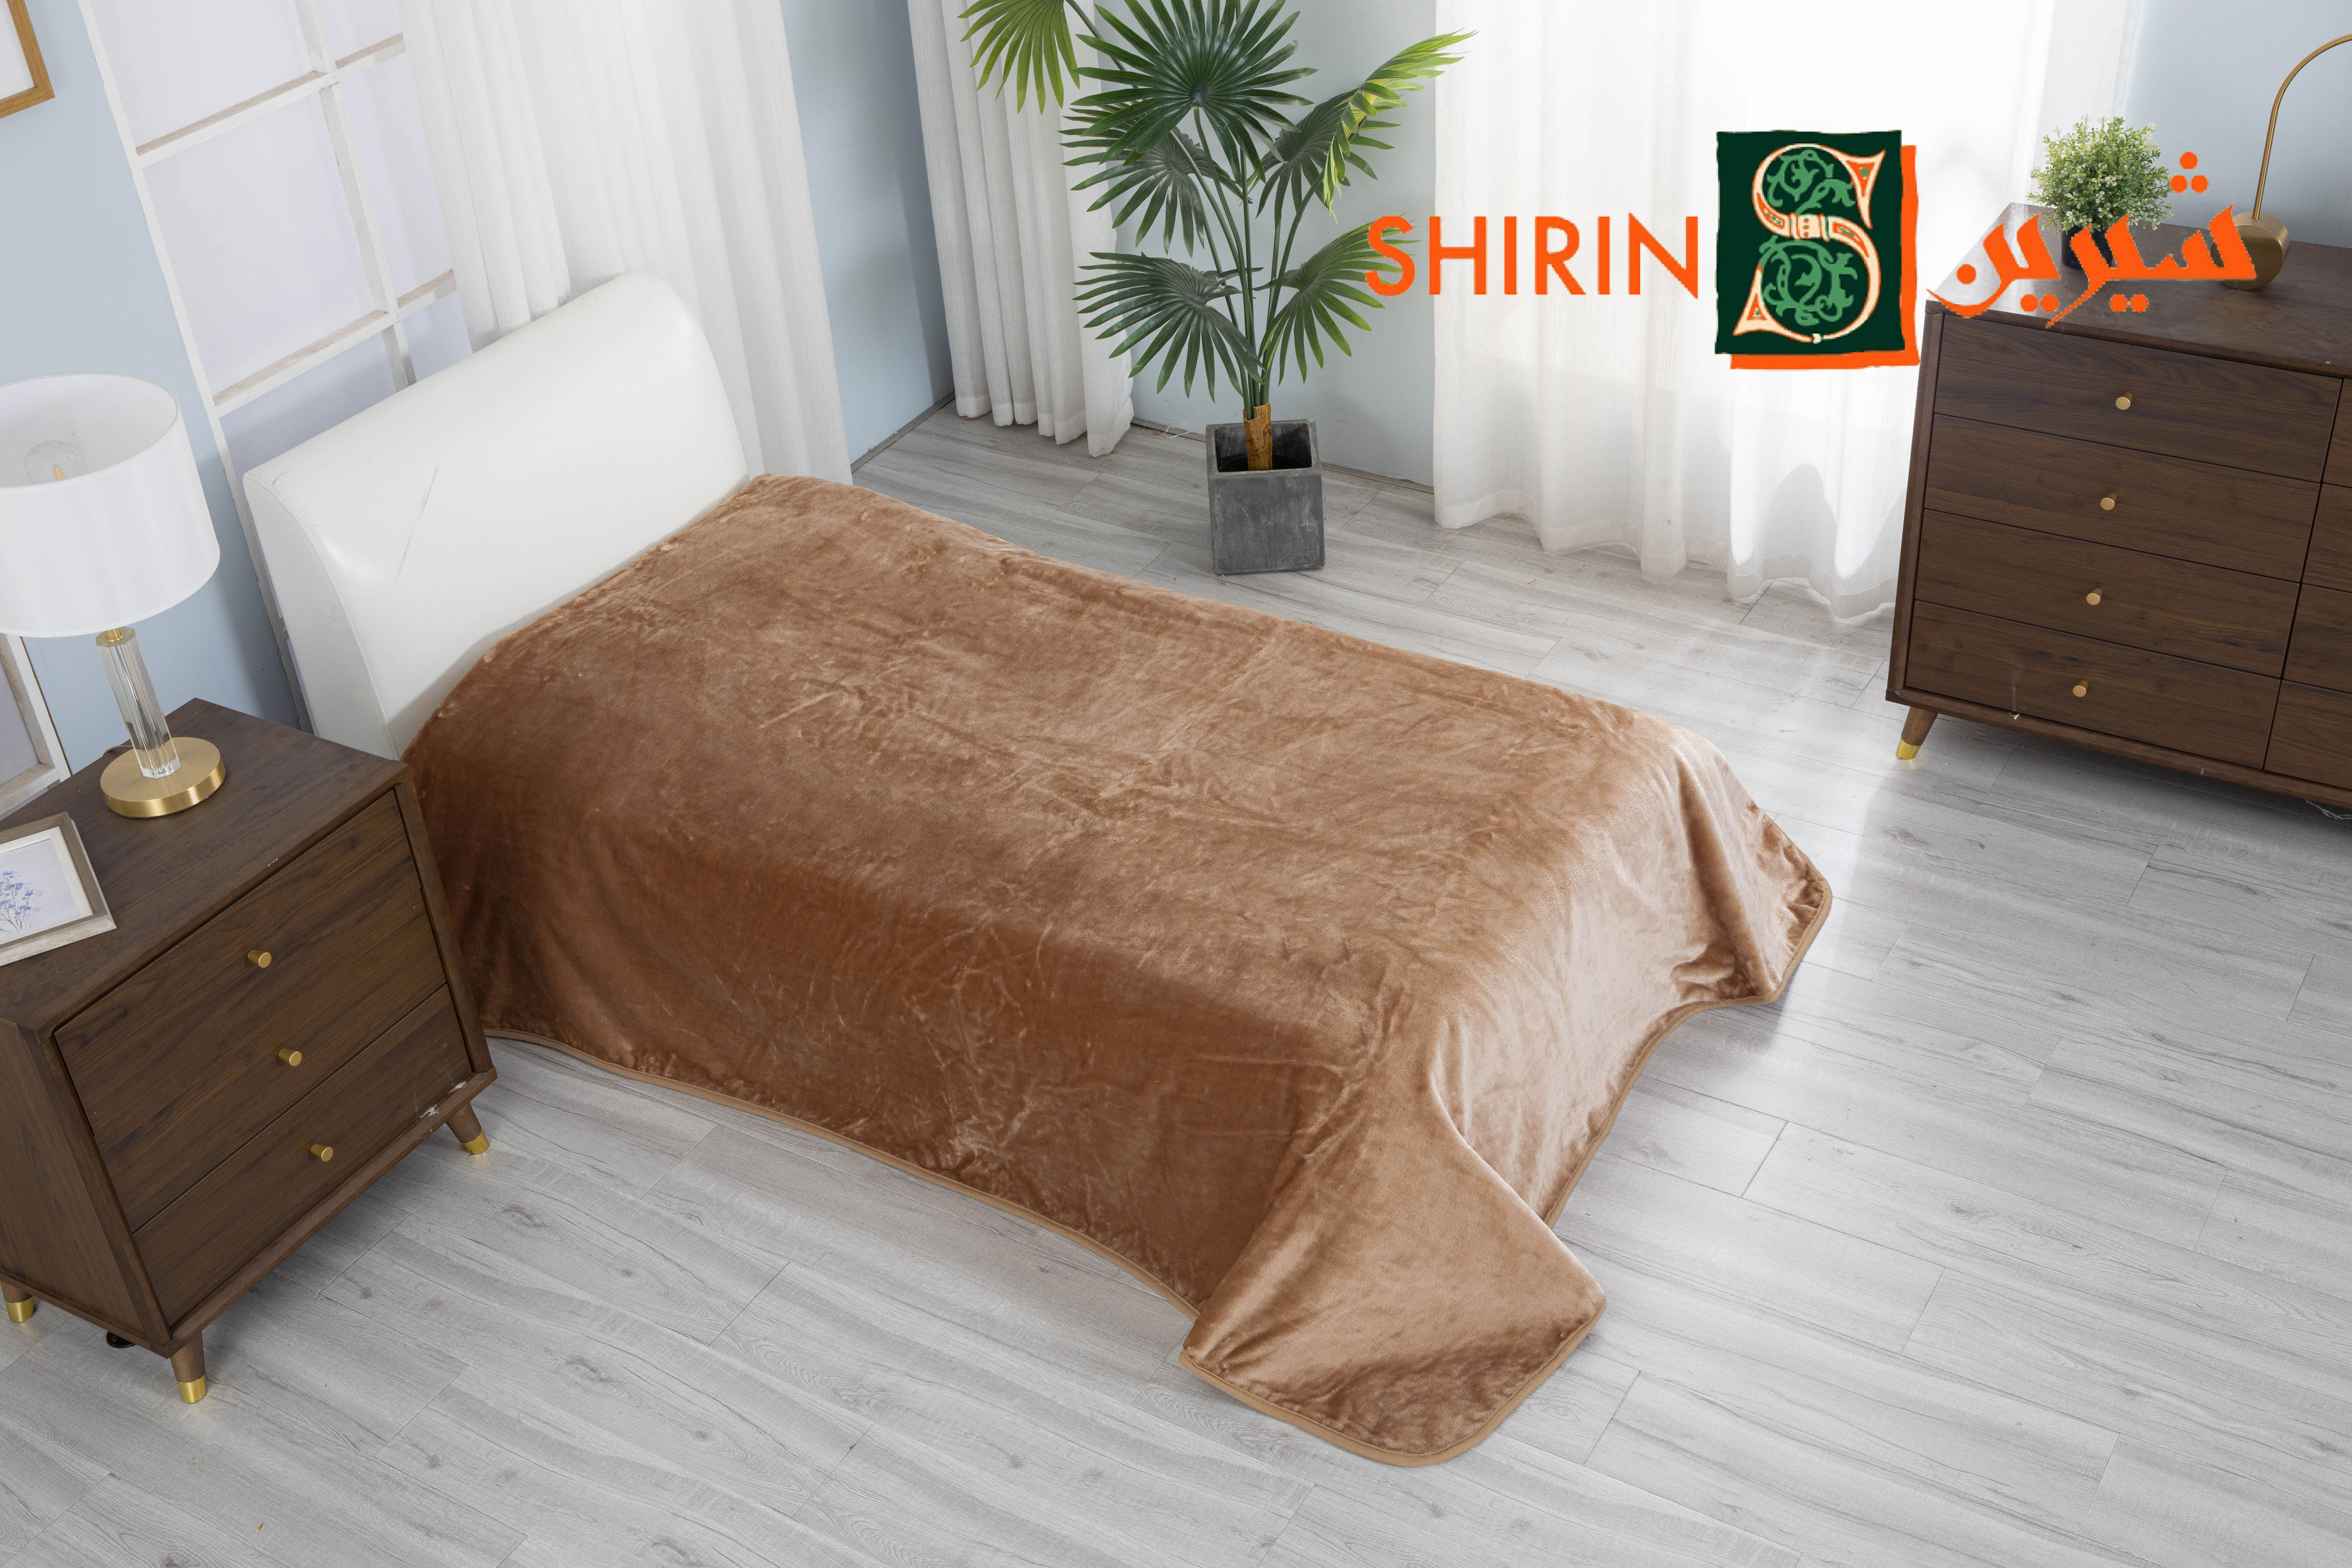 Shirin Blanket Single